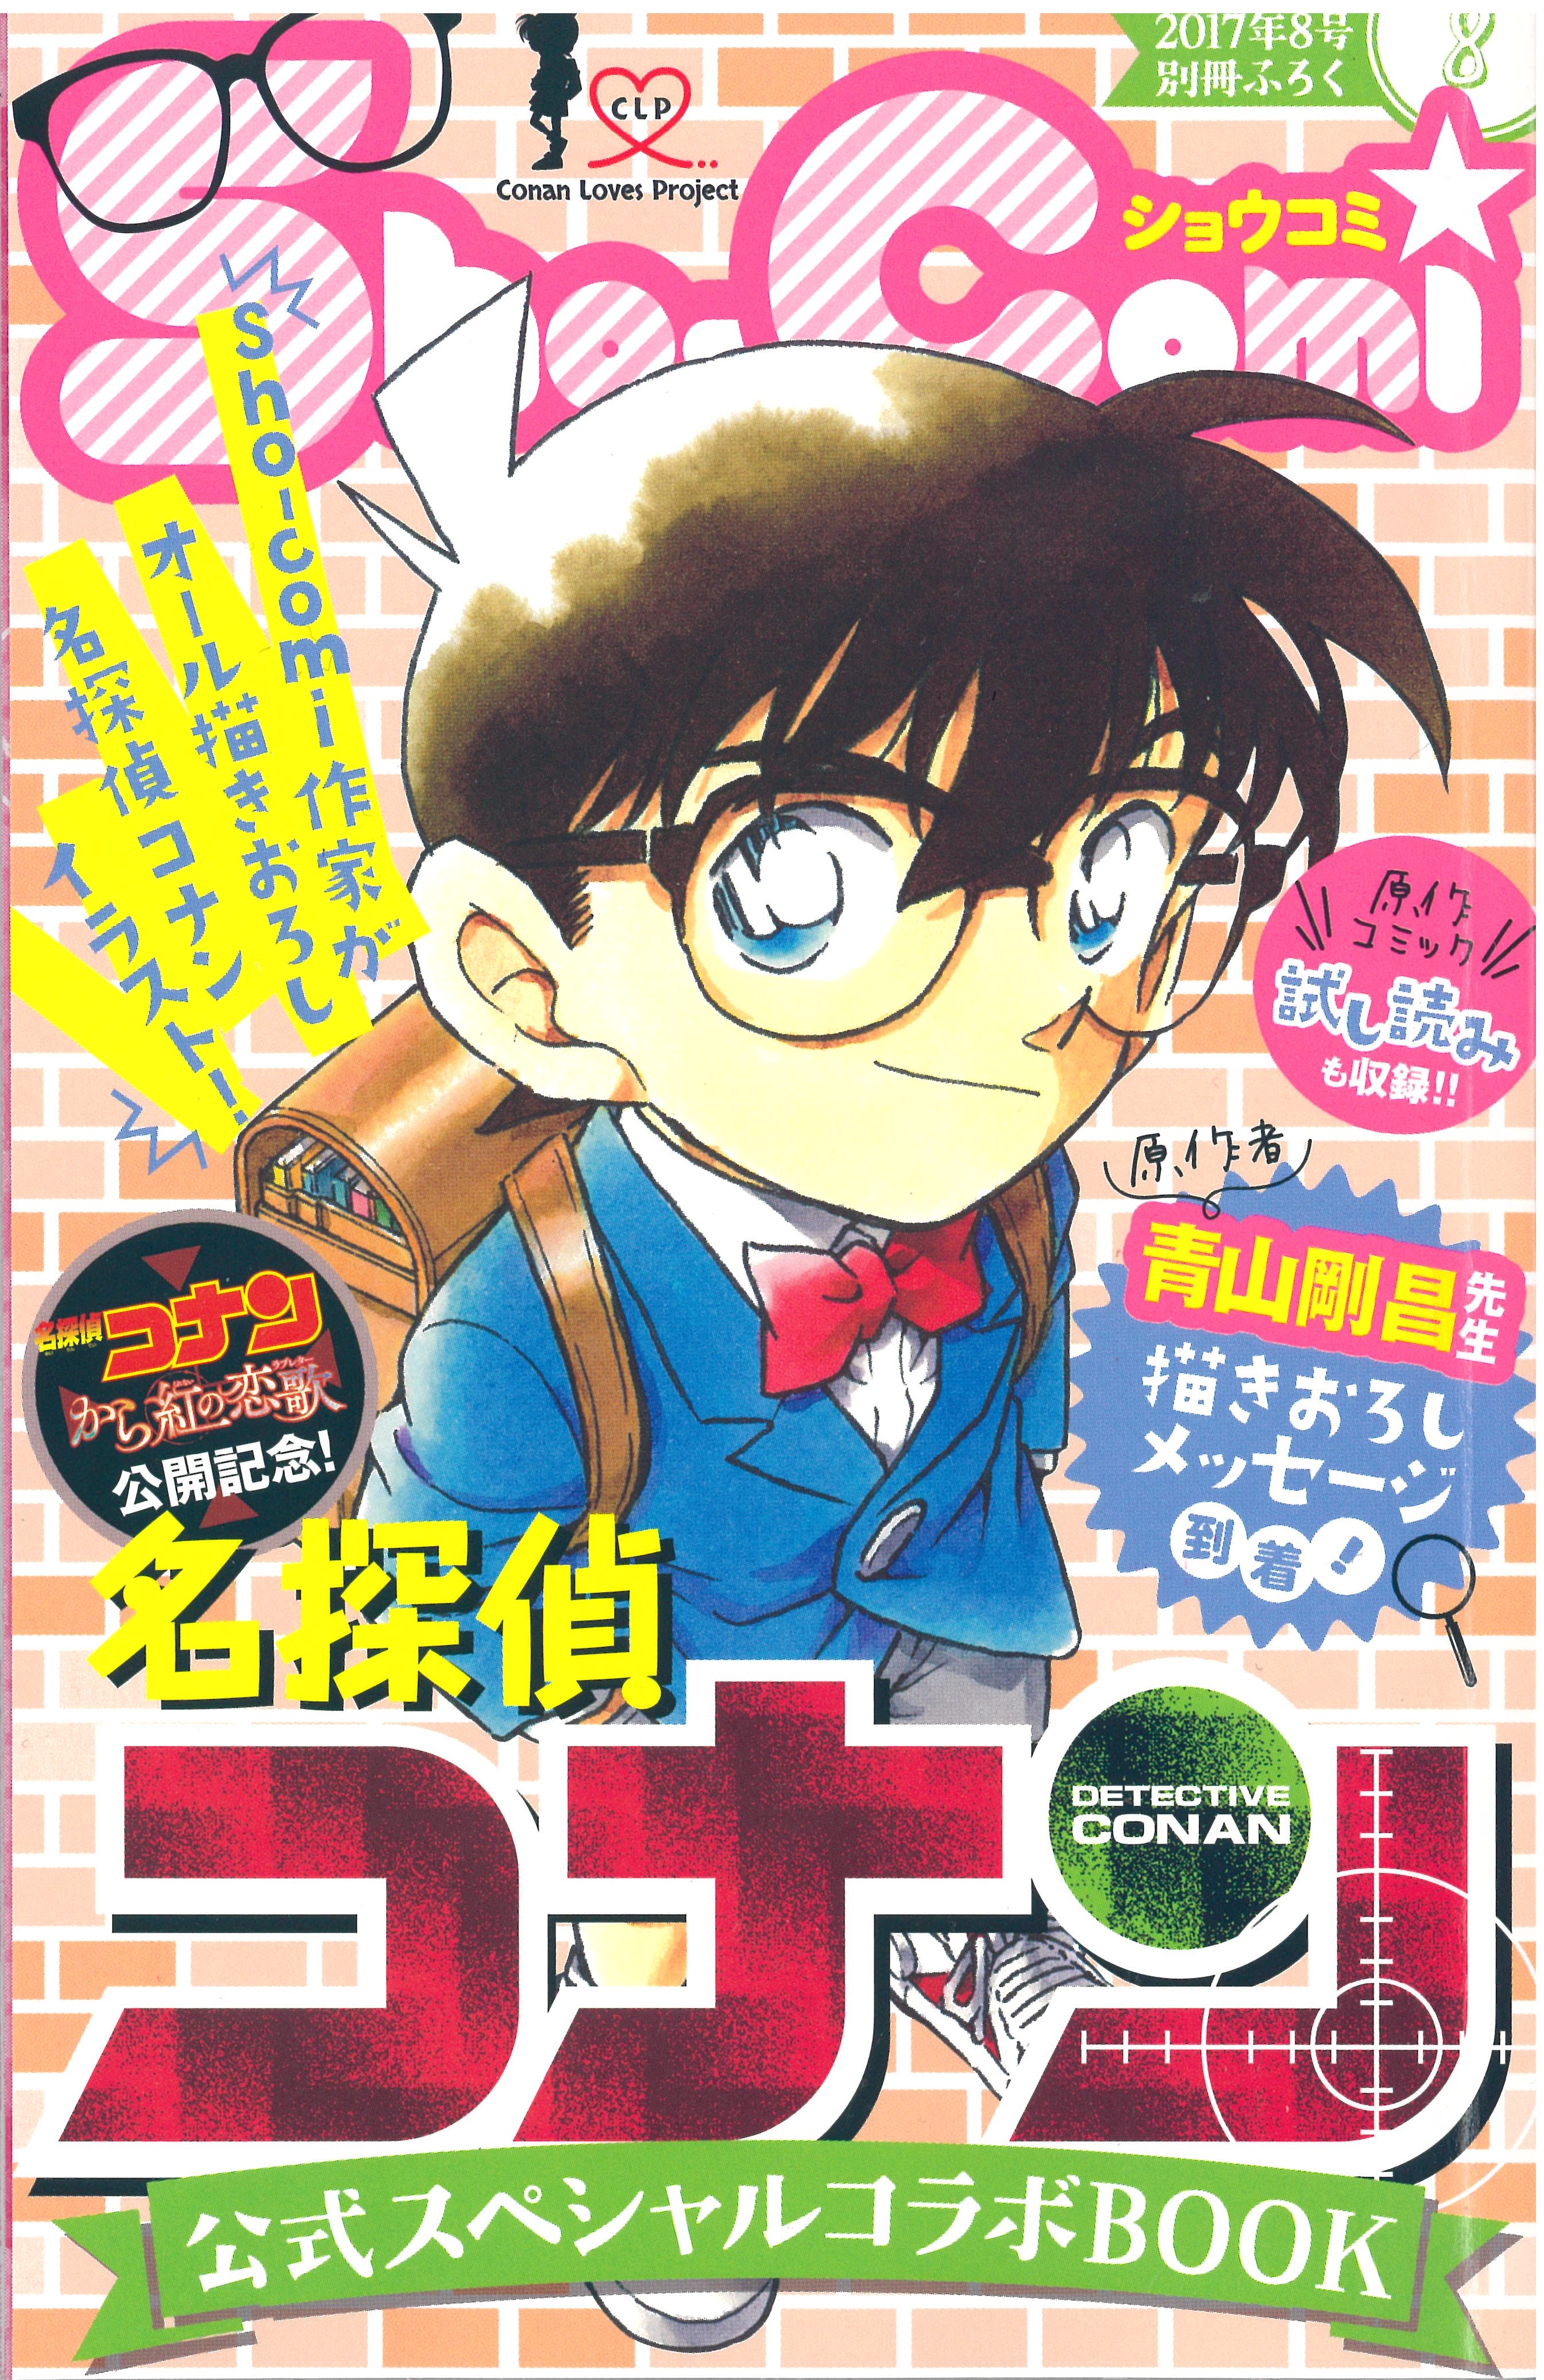 本日発売 Sho Comi８号は あの 名探偵コナン との超豪華 コラボ号なんです Sho Comiねっと 小学館コミック